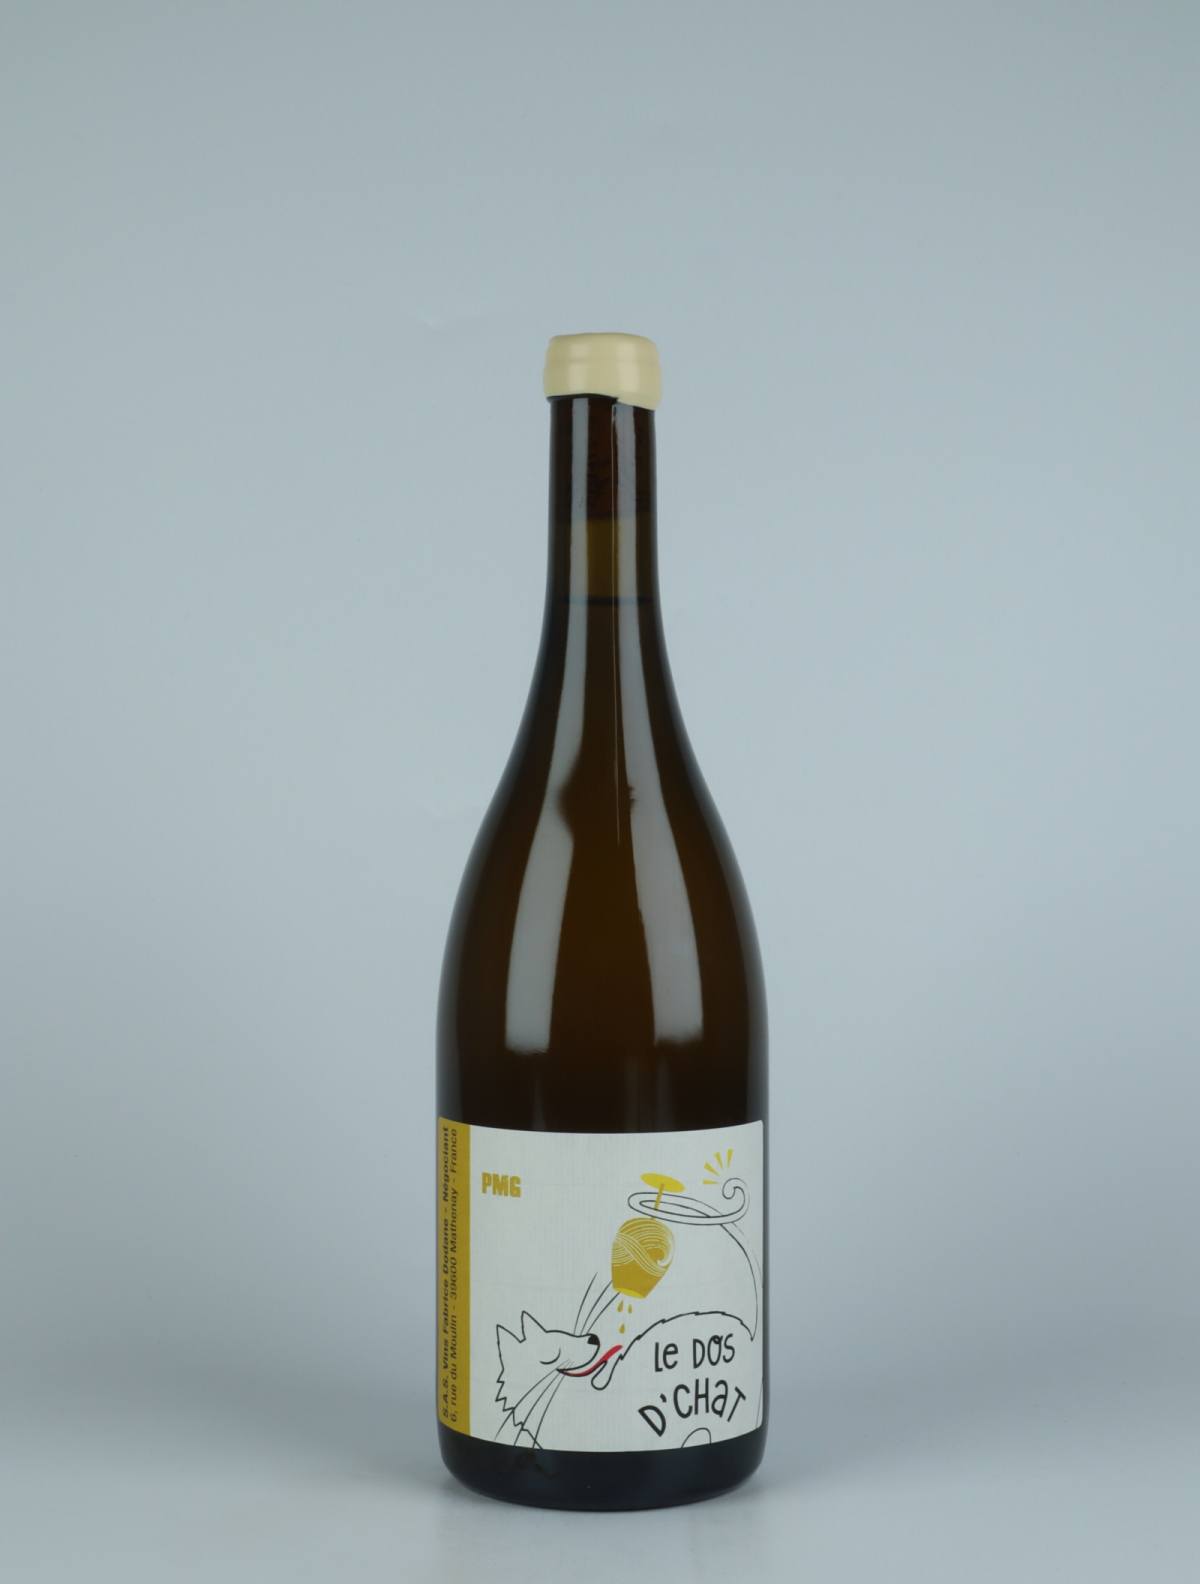 En flaske N.V. PMG Macération Gewürztraminer Orange vin fra Fabrice Dodane, Jura i Frankrig